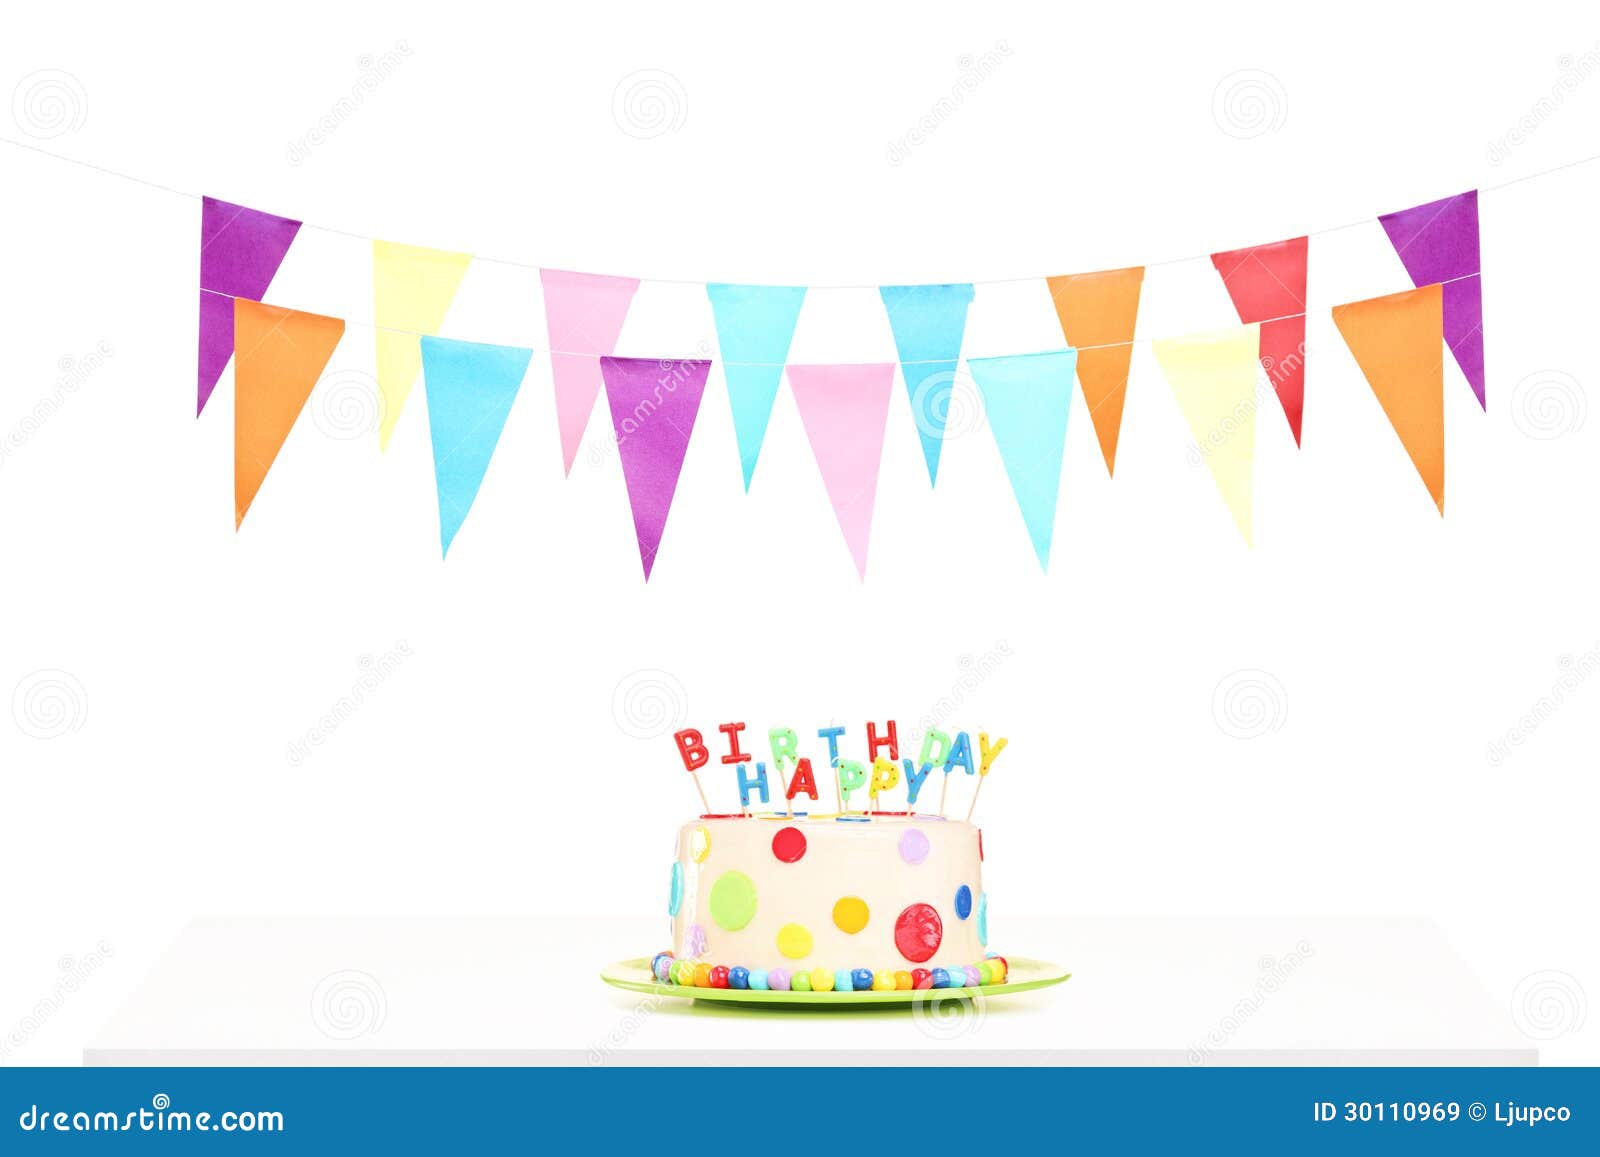 Gâteau d'anniversaire avec une bougie nombre - 18 ans Photo Stock - Alamy